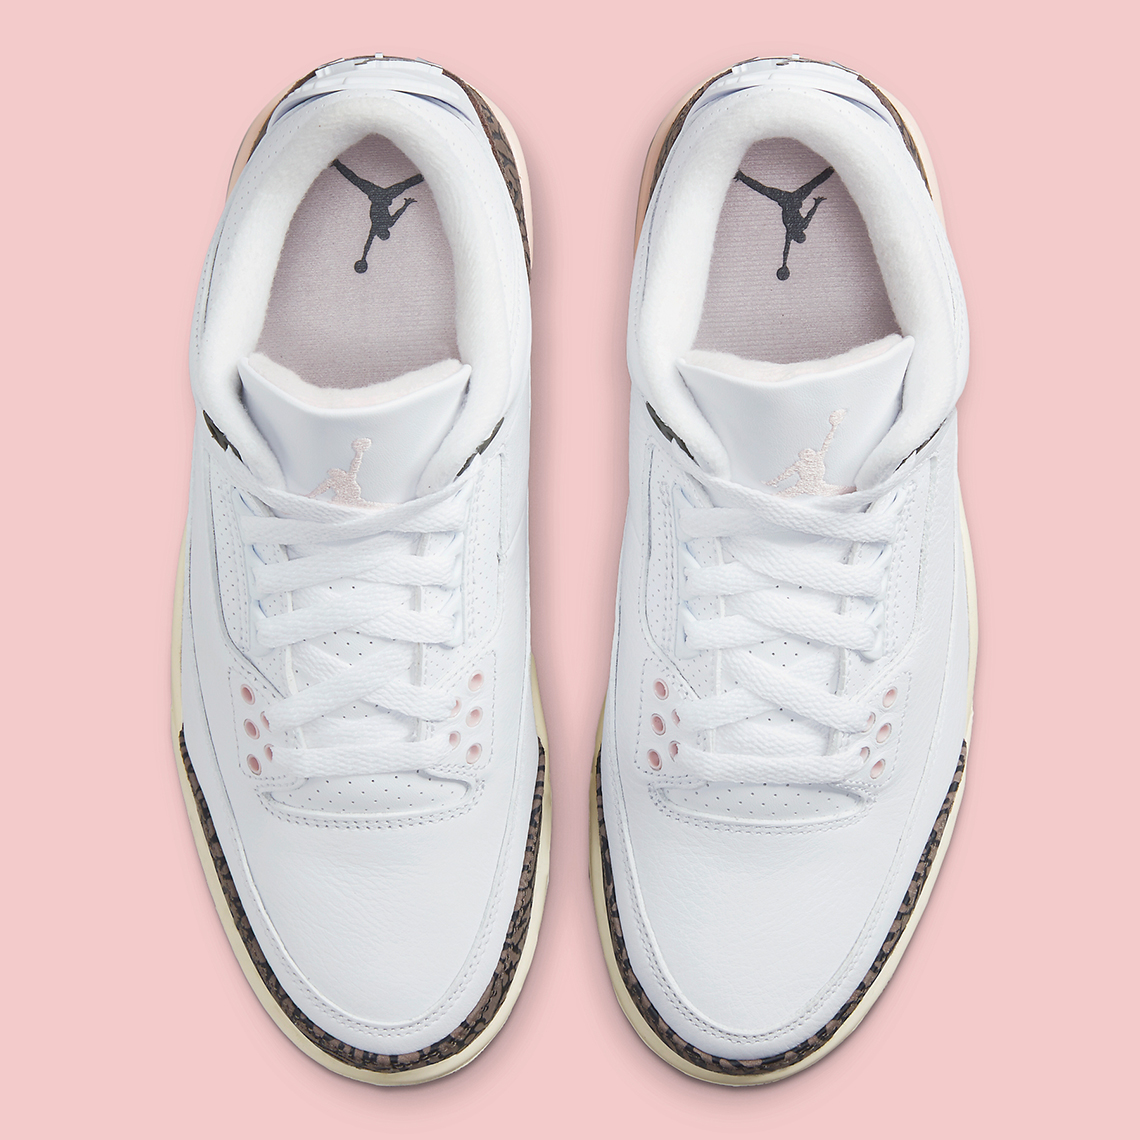 Lily Allen en Air Jordan 4 White